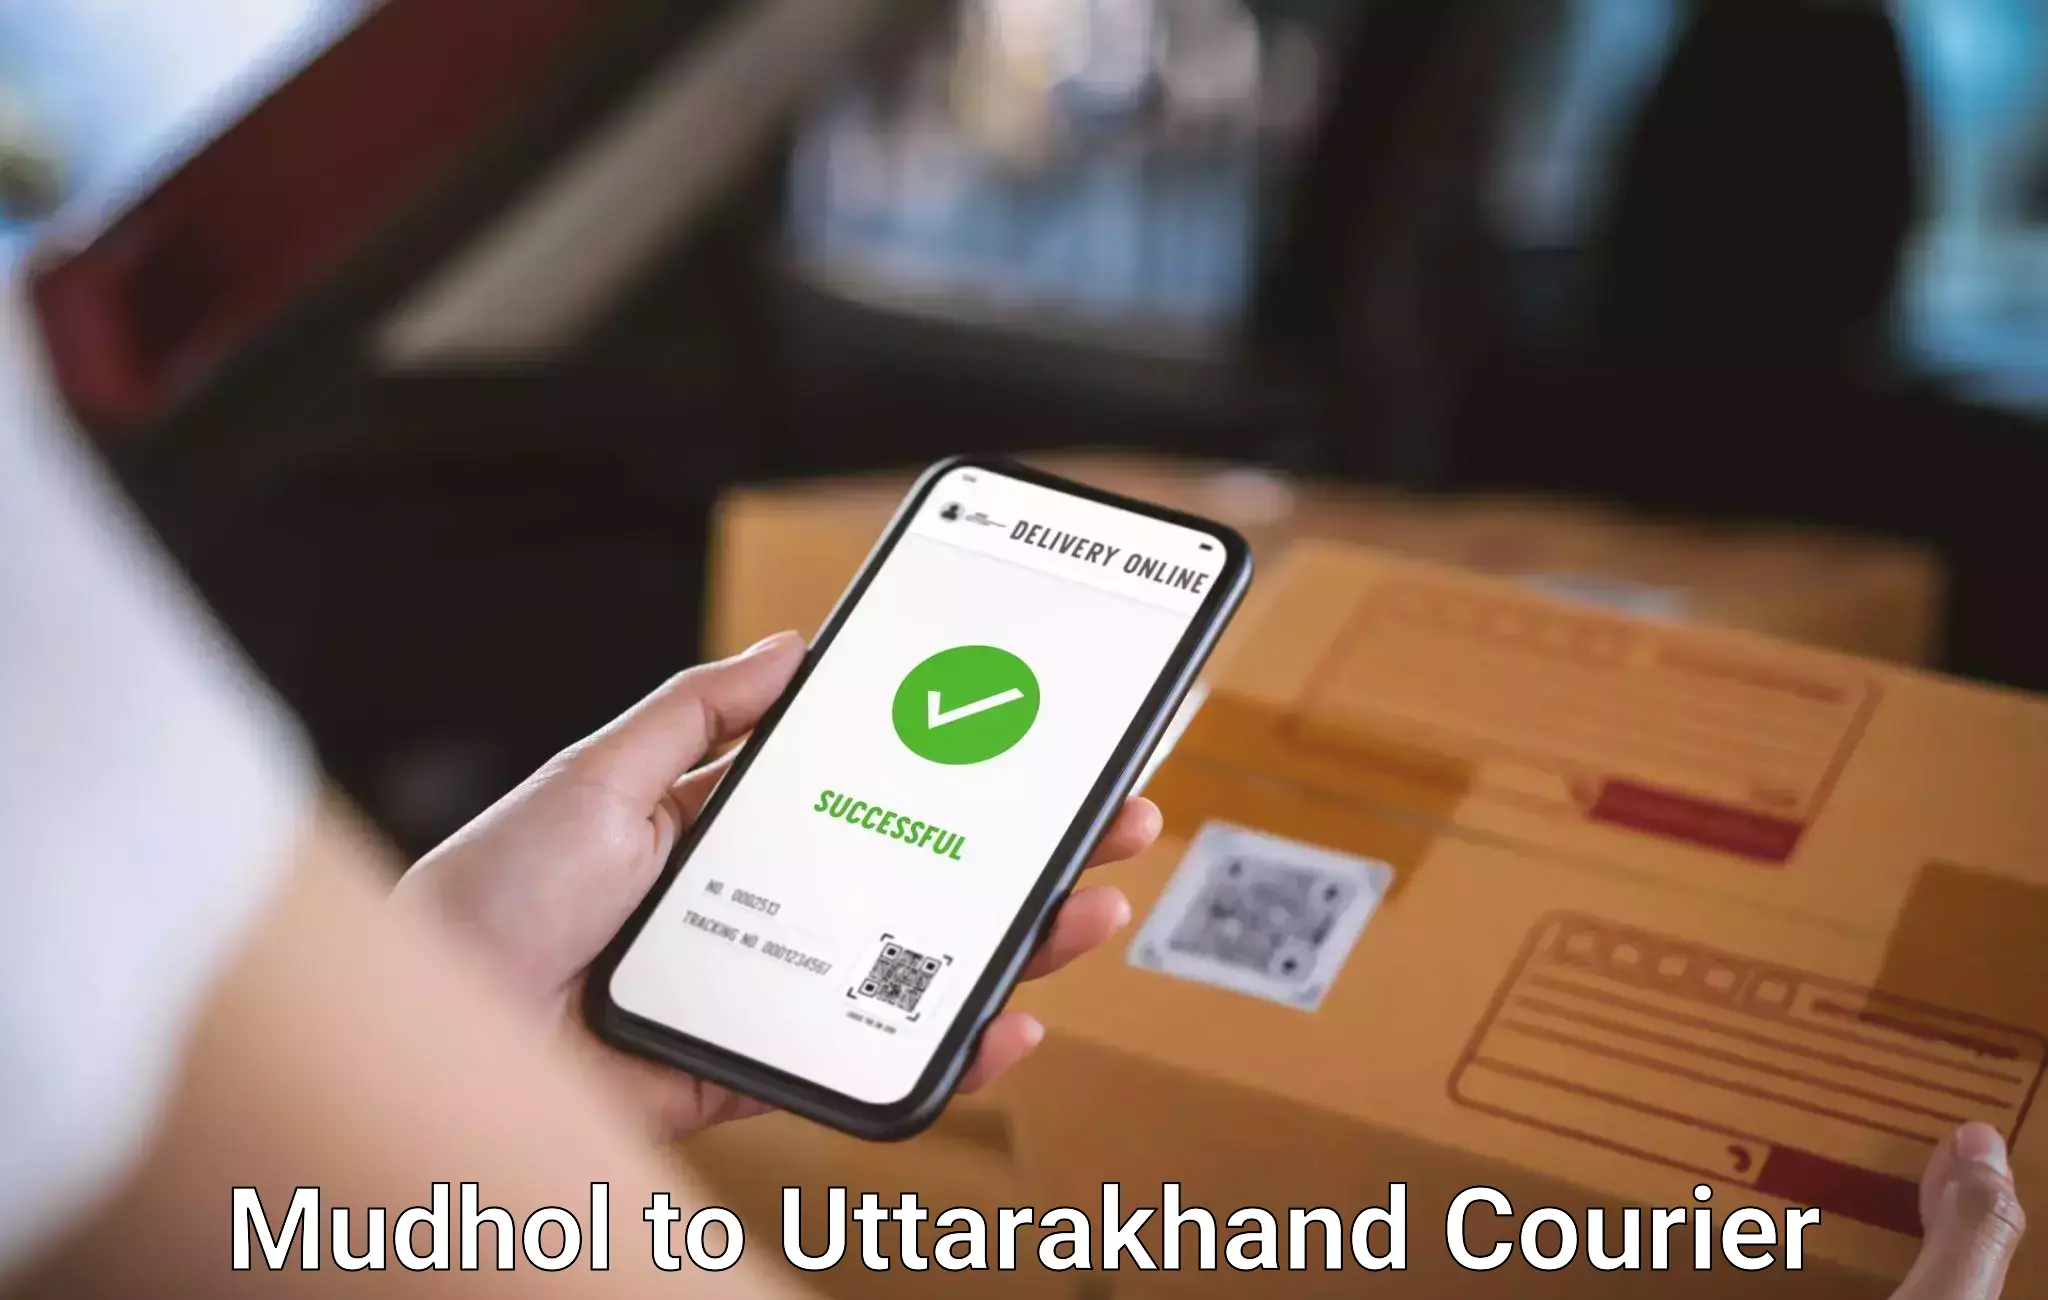 Baggage shipping advice Mudhol to Uttarakhand